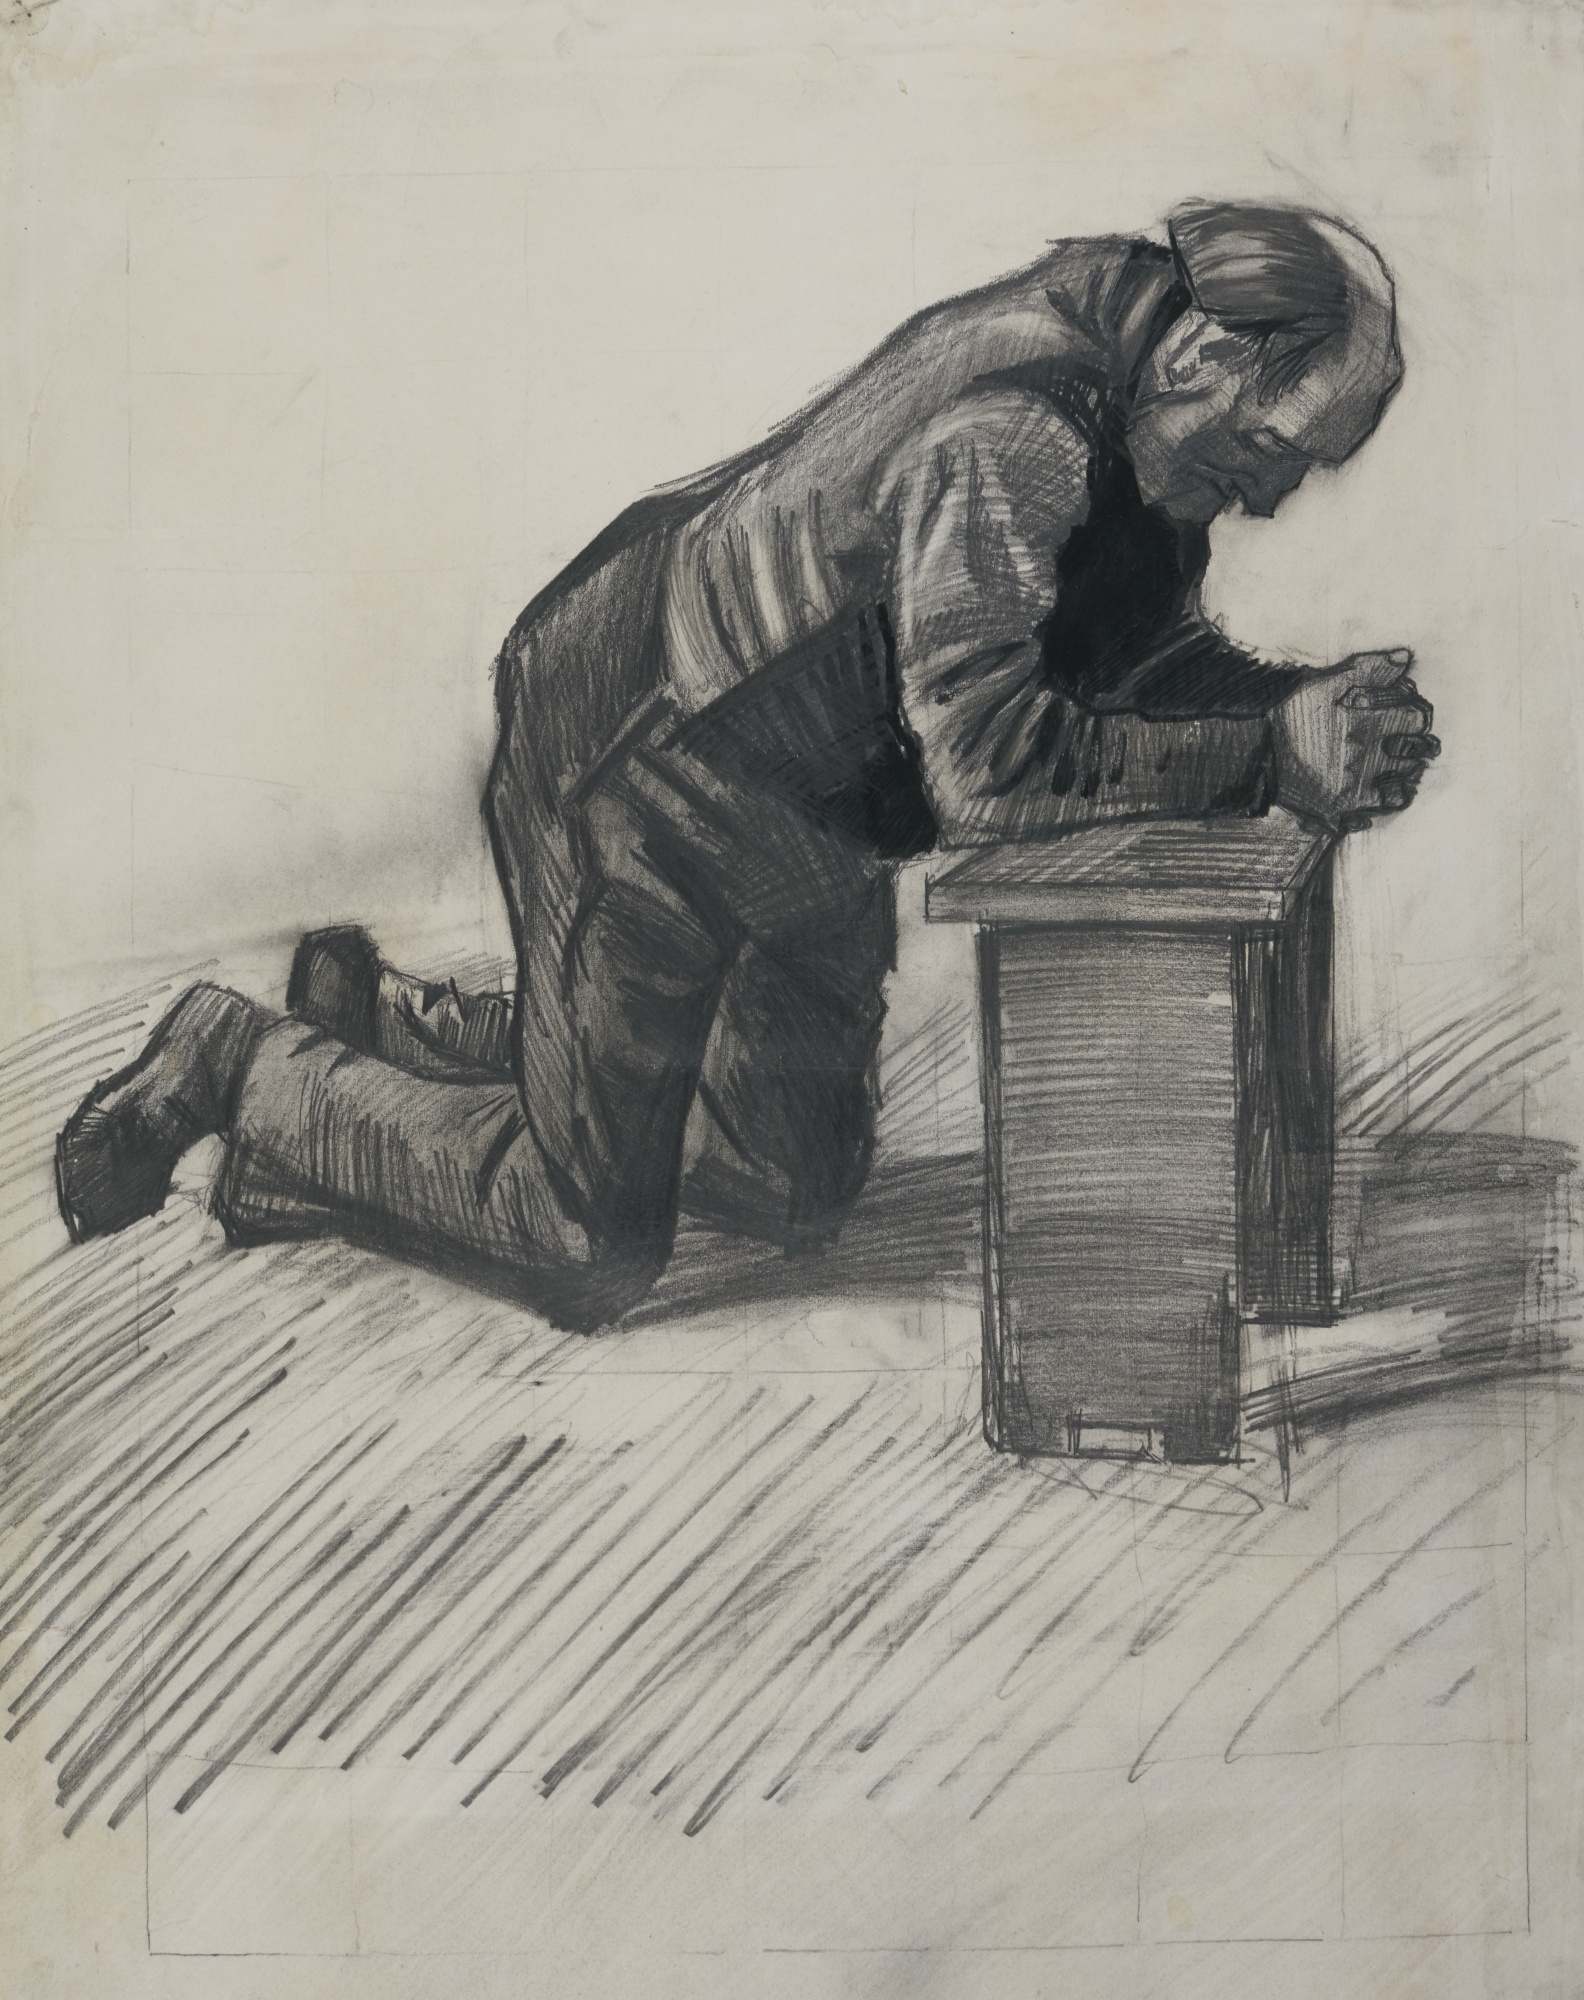 Man Praying Drawing at GetDrawings Free download